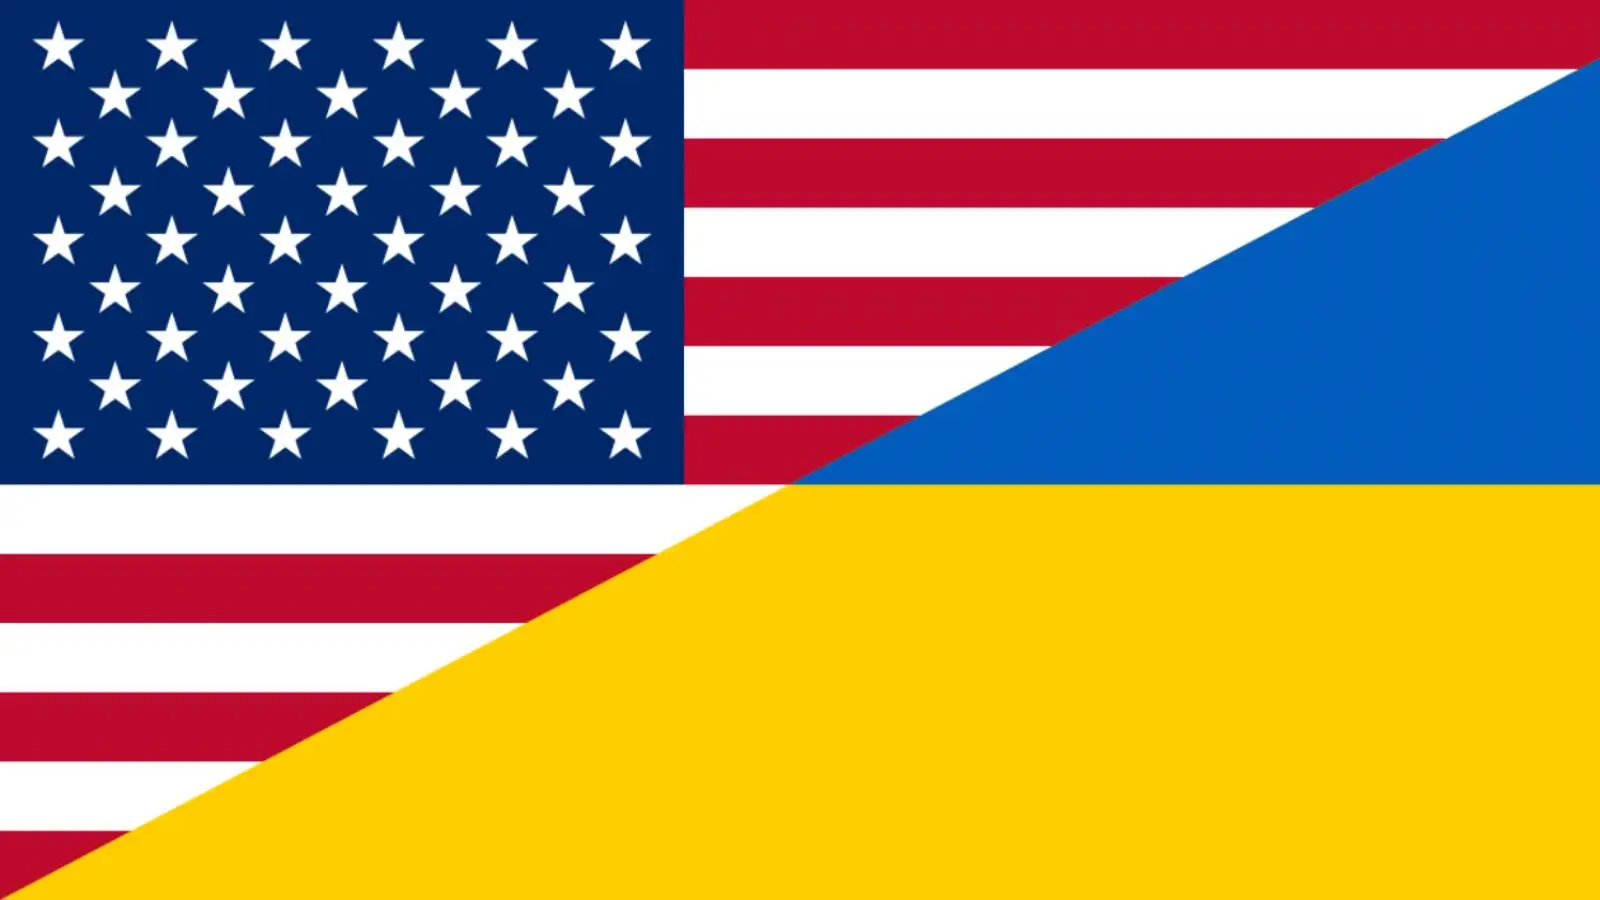 USA uhkaa Venäjää katastrofaalisilla seurauksilla, jos se hyökkää Ukrainaan ydinohjuksilla